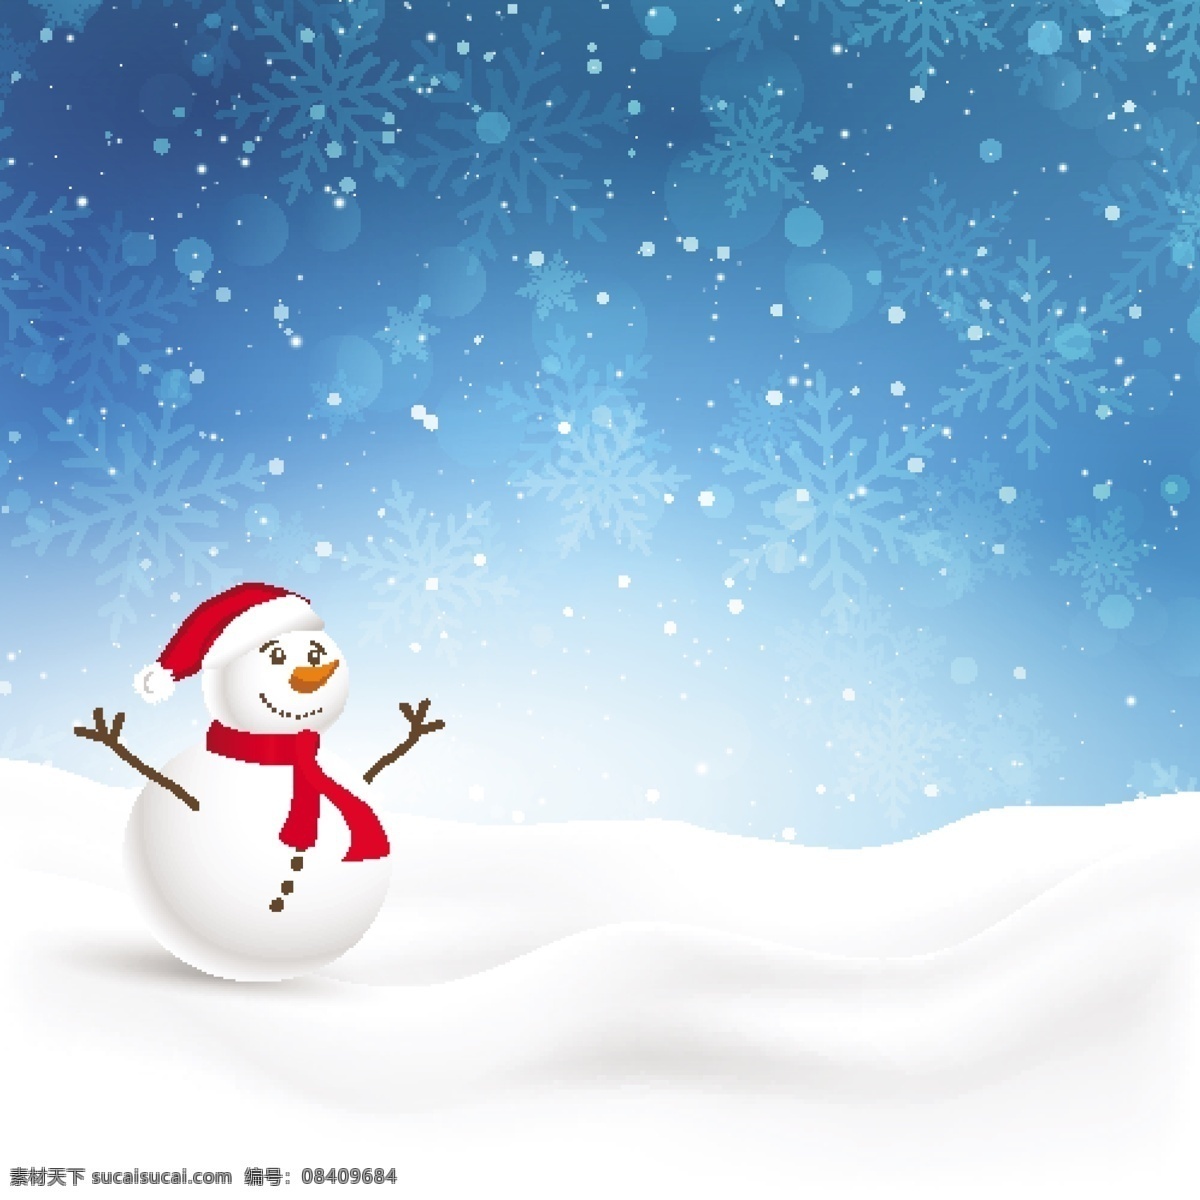 雪 雪景 雪山 矢量雪花 海报背景 圣诞节 梦幻冬天 底纹背景 手绘雪花 手绘雪景 圣诞雪花 花纹 下雪 雪地 卡通设计